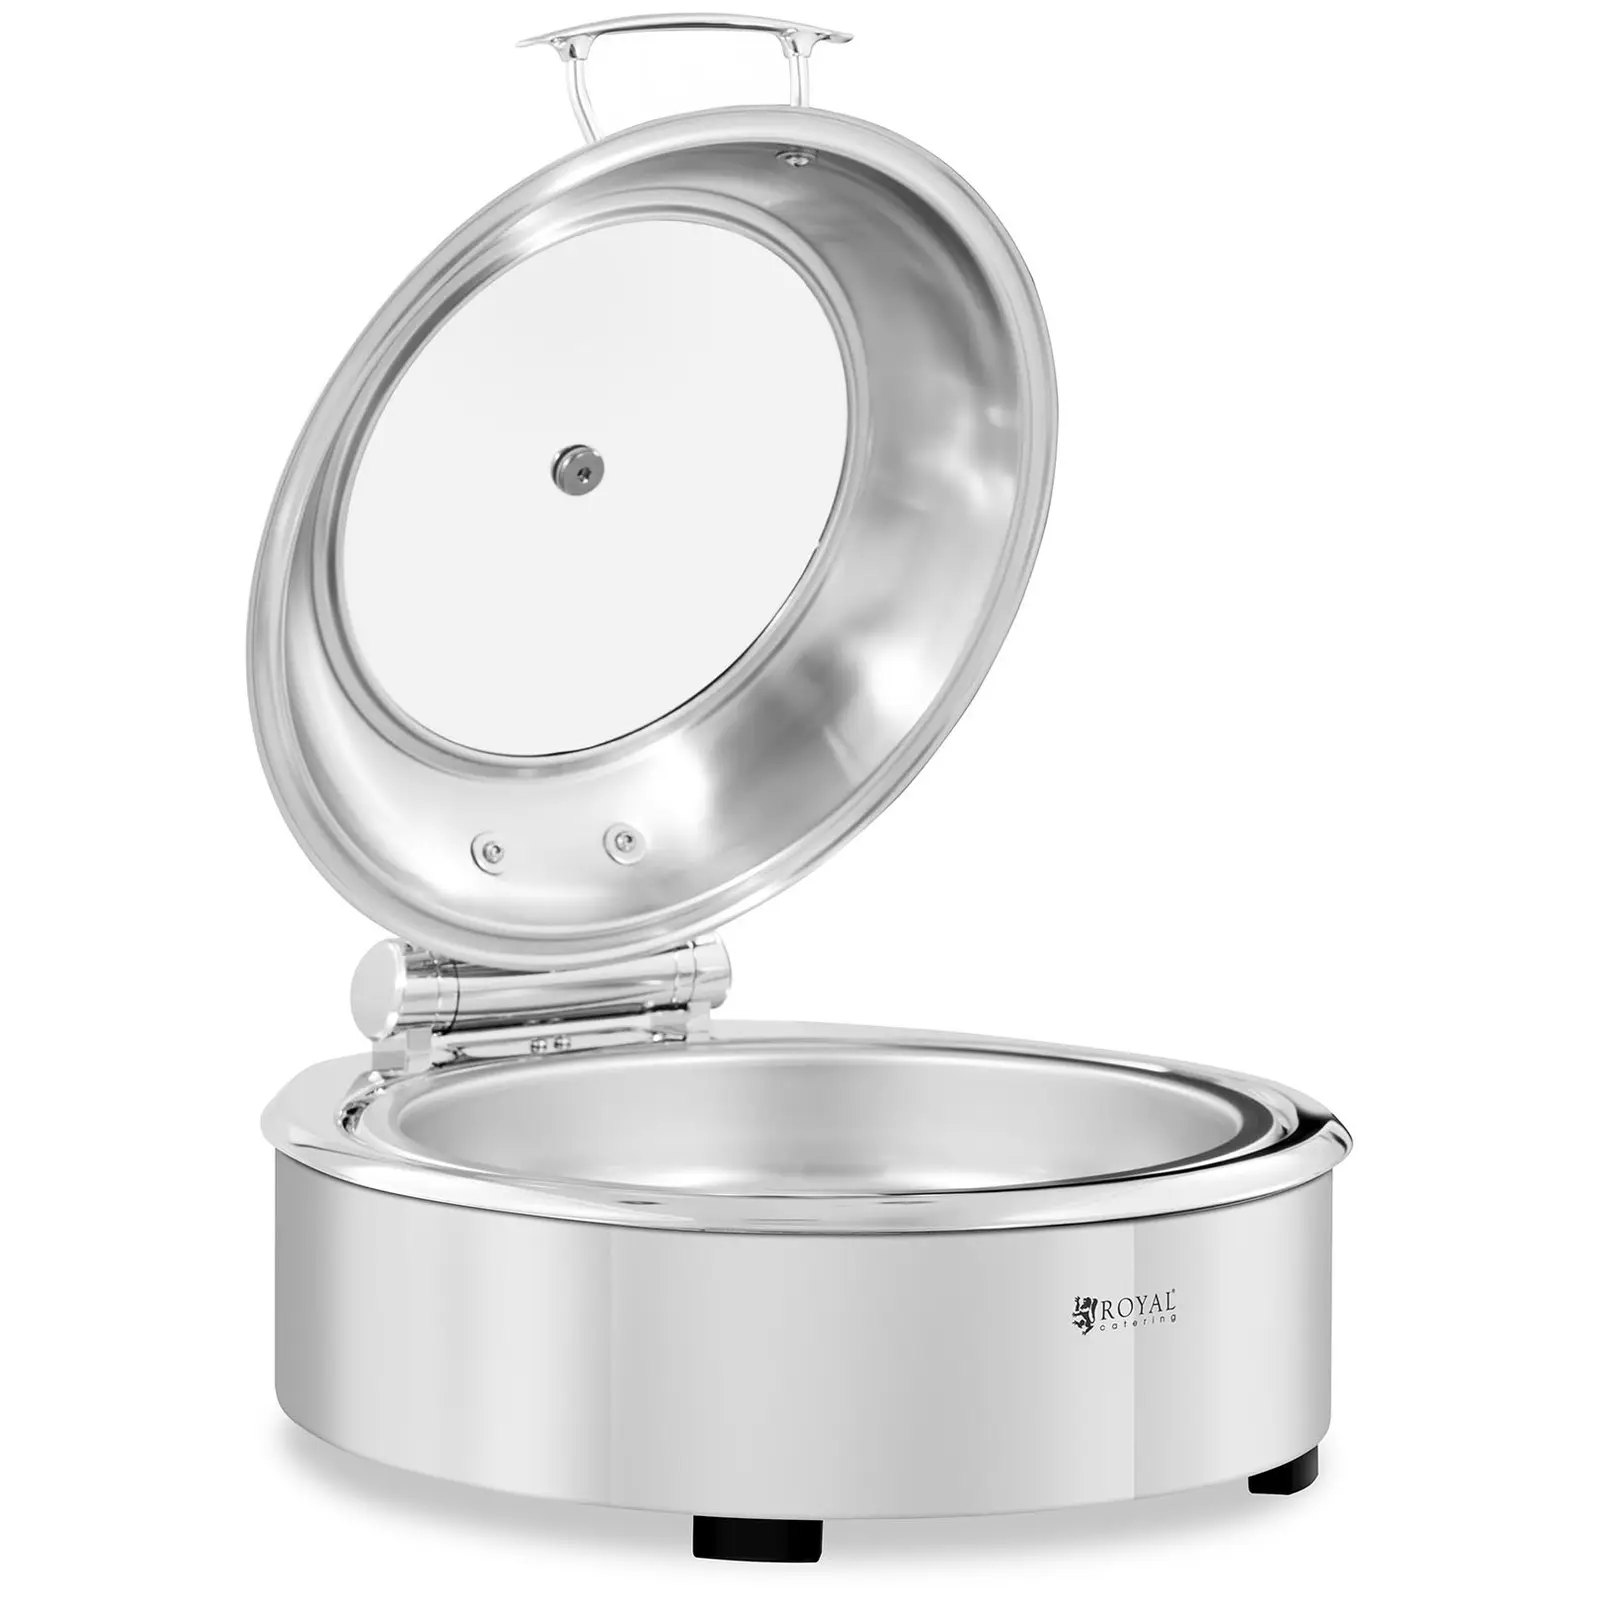 B-varer Chafing Dish - rund med visningsvindu - Royal Catering - 5.5 L - N/A brenncelle